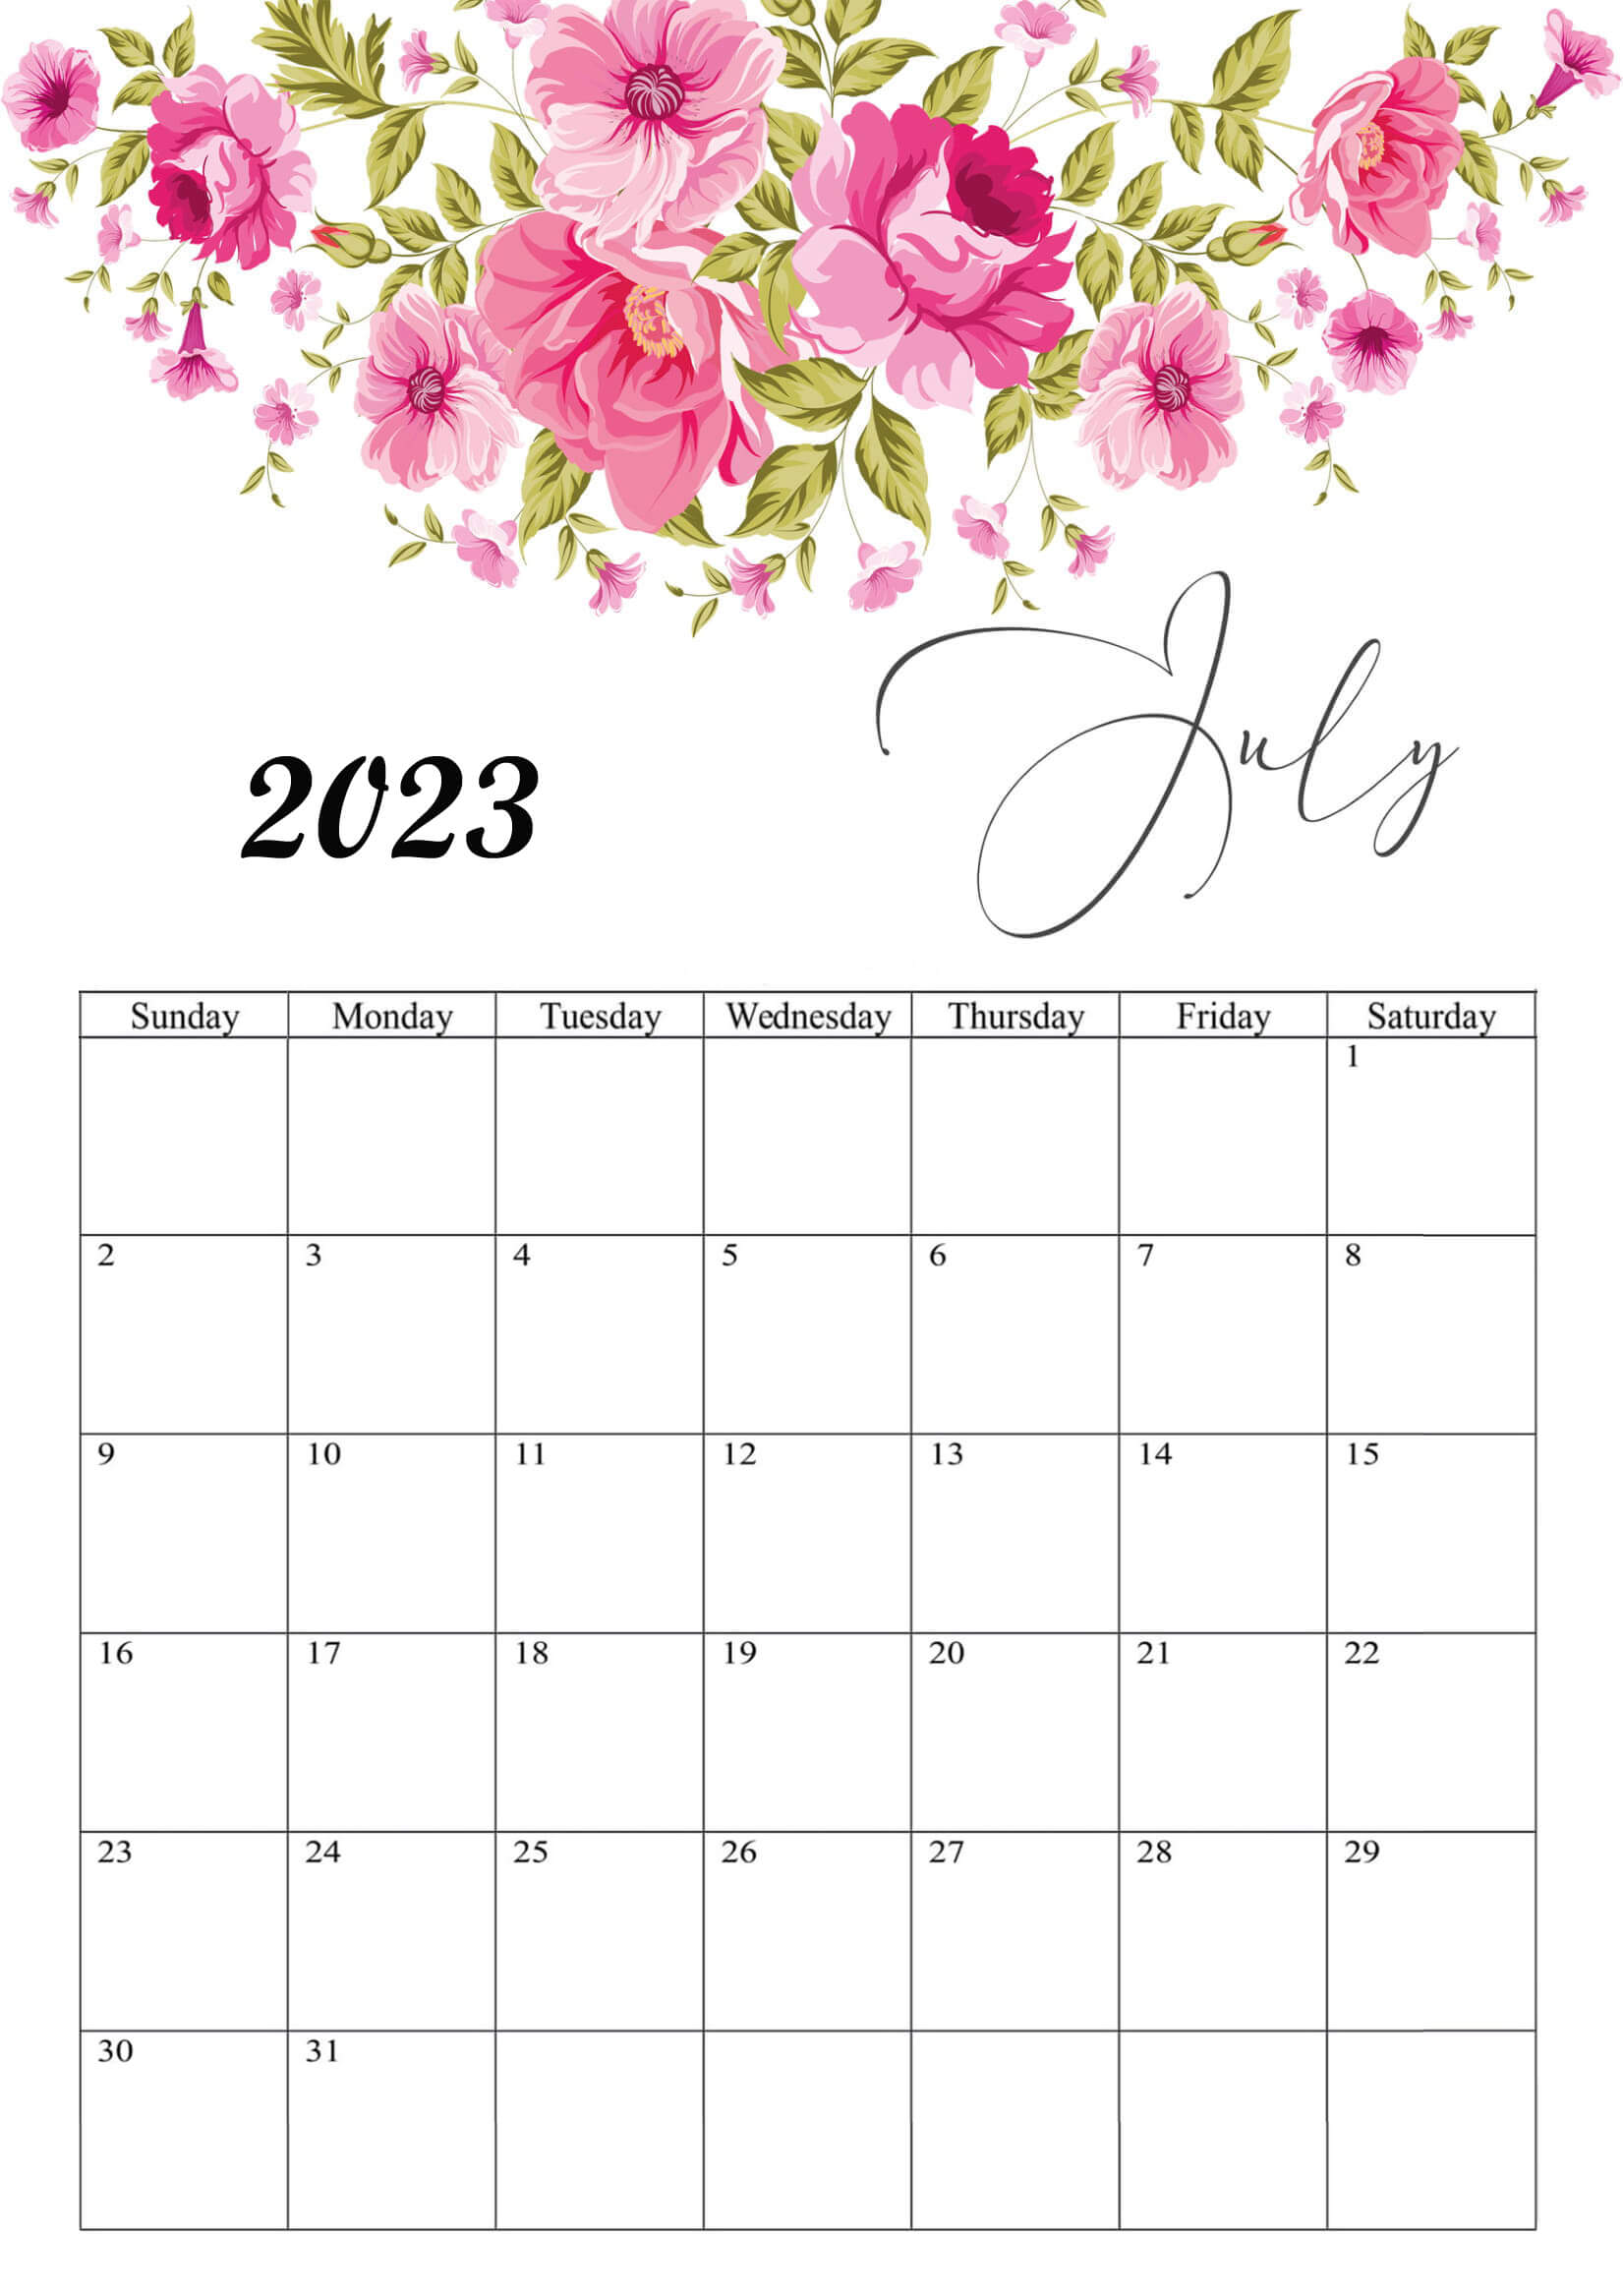 July 2023 Calendar Floral